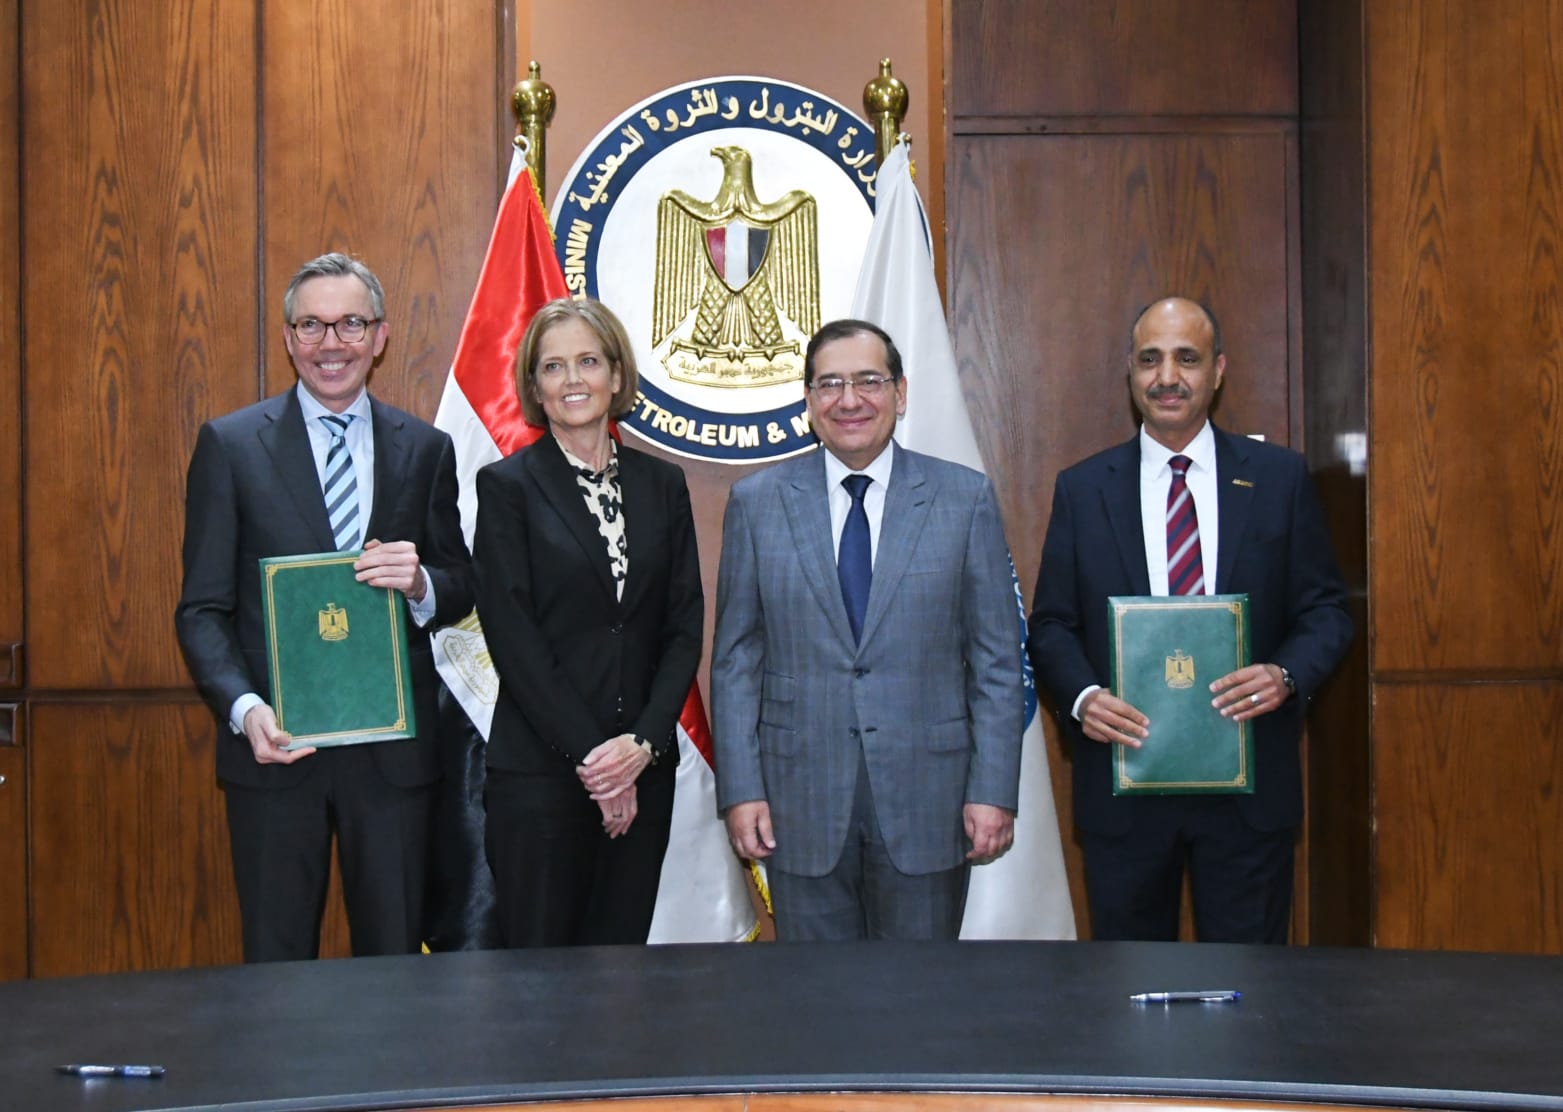 توقيع اتفاق مشروع إنتاج الميثانول الأخضر في مصر بحضور وزير البترول المصري